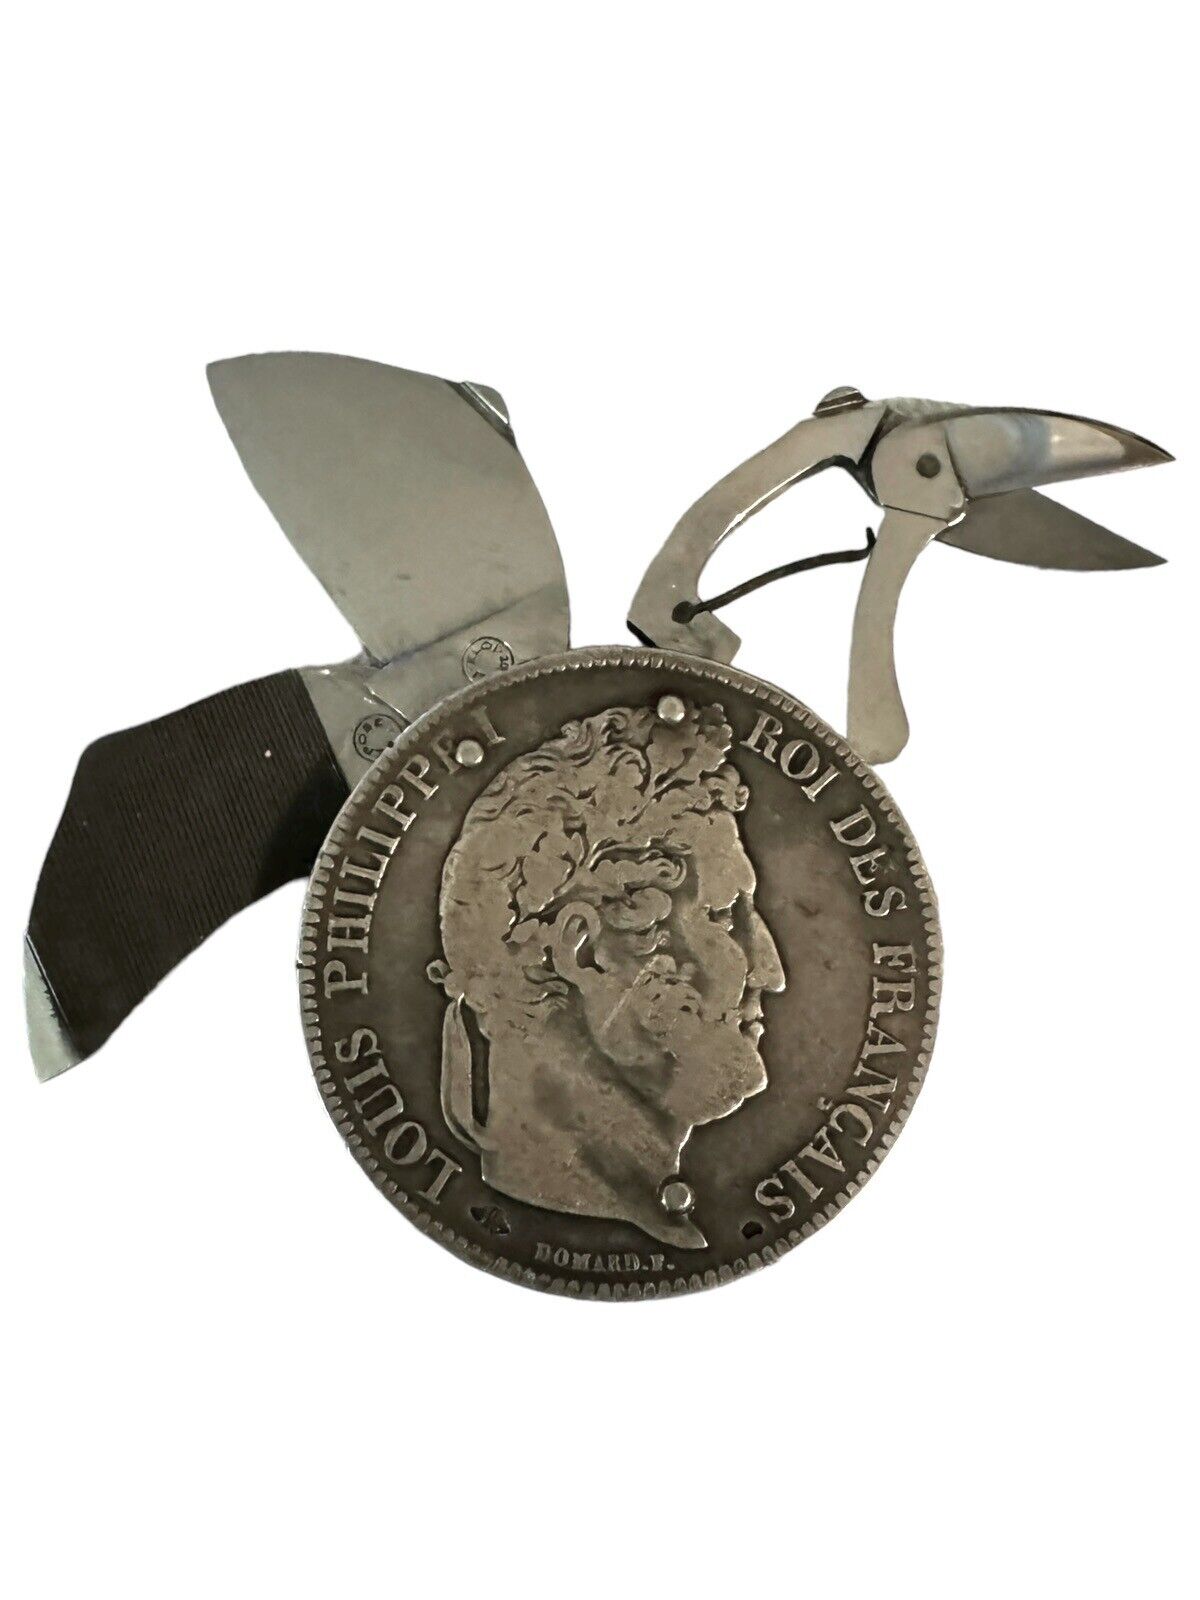 ELOI PERNET 1838 Louis Phillippei 5 Franc 3 Blade Coin Knife, Francais UNIQUE §